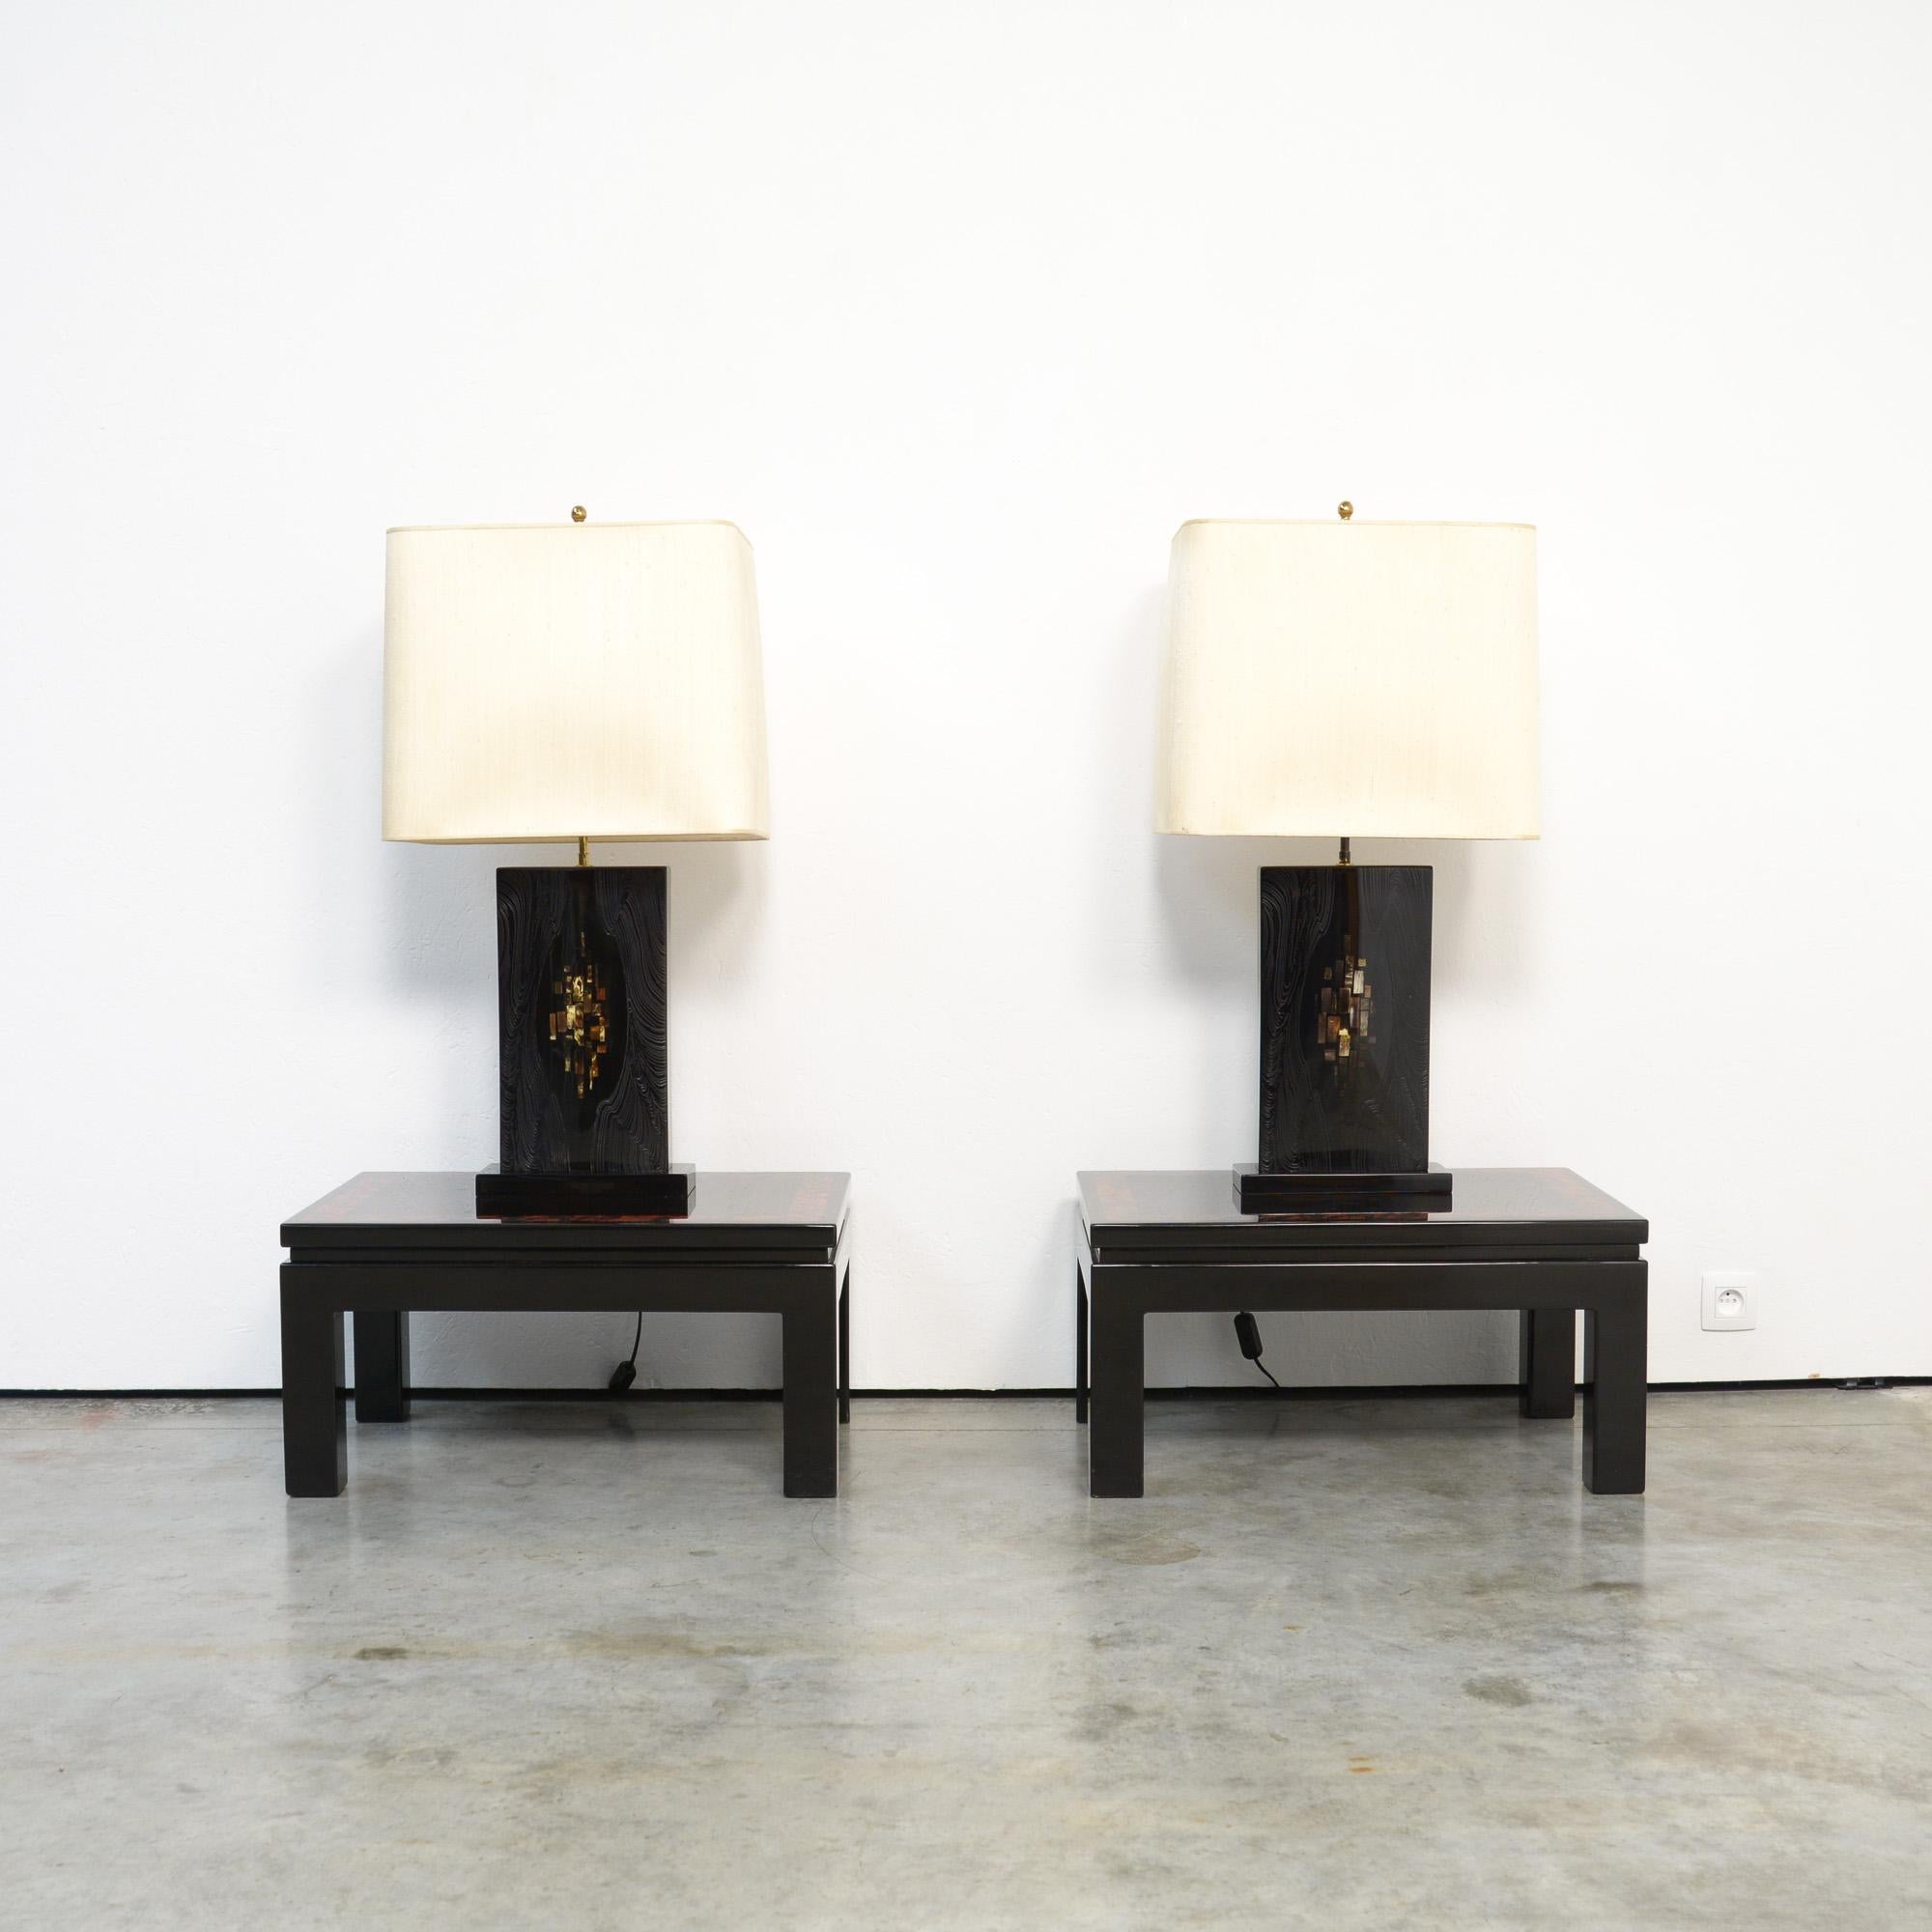 Dieses exklusive Tischlampenpaar wurde im Atelier von Marcel und Jean-Claude Dresse entworfen und hergestellt. Die Lampen können auf die 1970er Jahre datiert werden.
Der Sockel ist aus glänzend schwarz lackiertem Harz mit Knochenintarsien